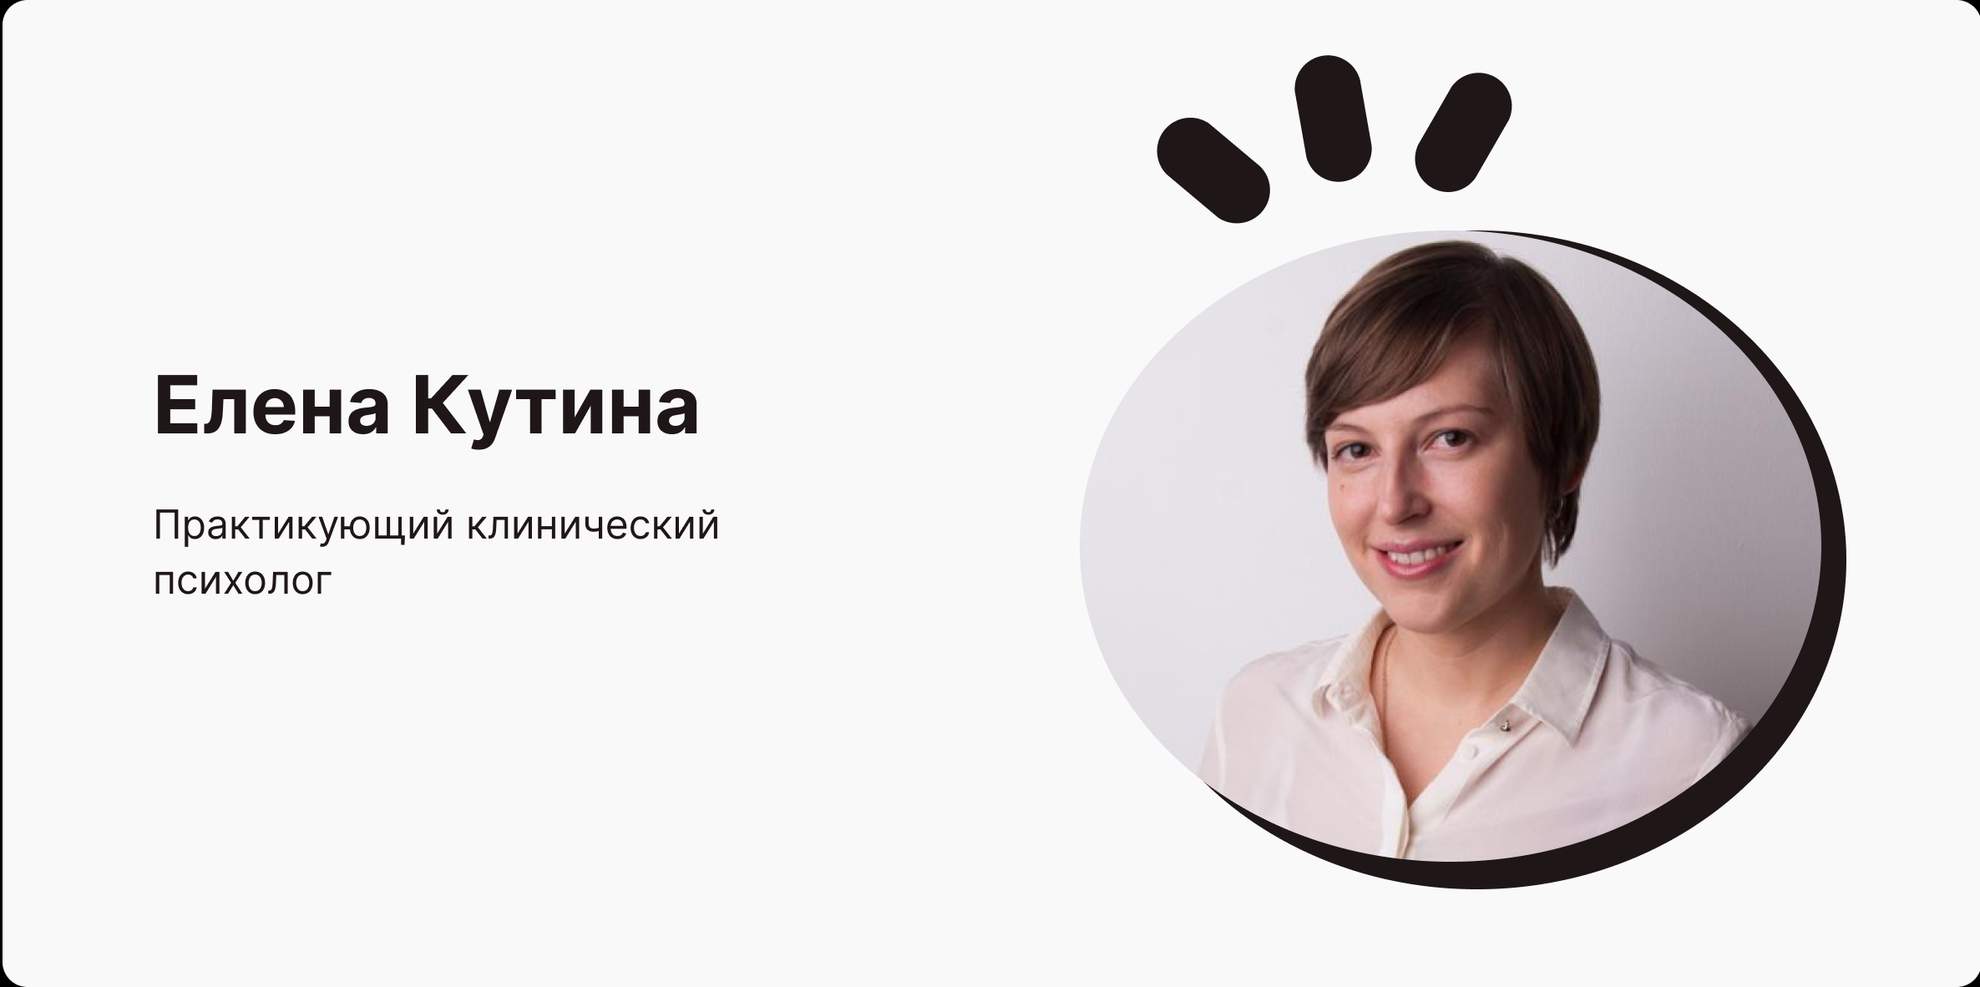 Елена Кутина, клинический психолог